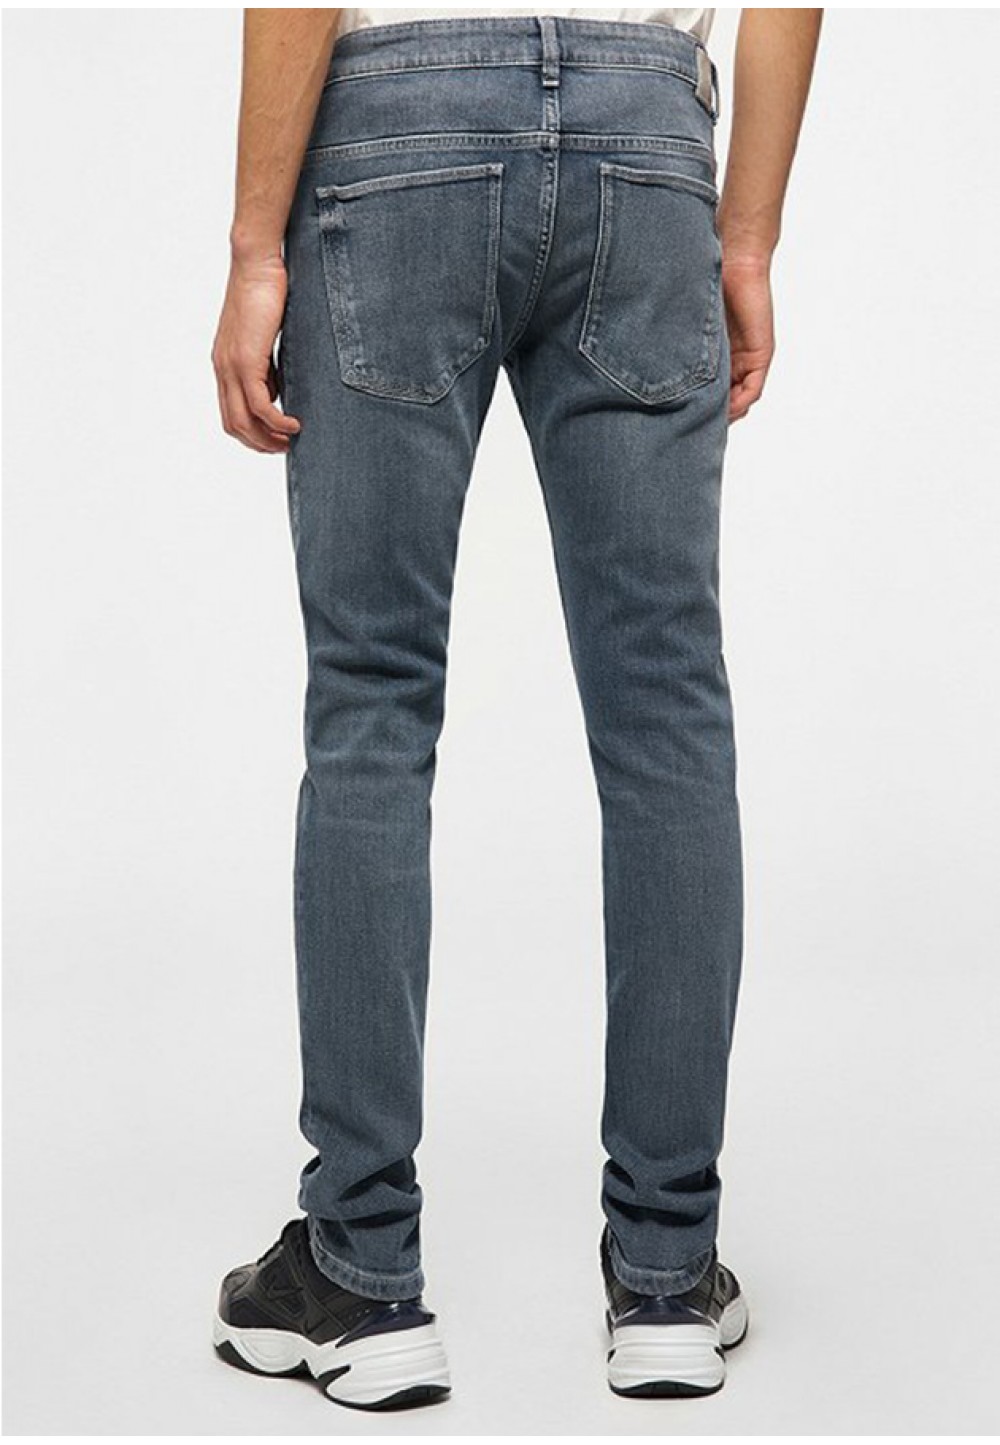 Стильные мужские джинсы 